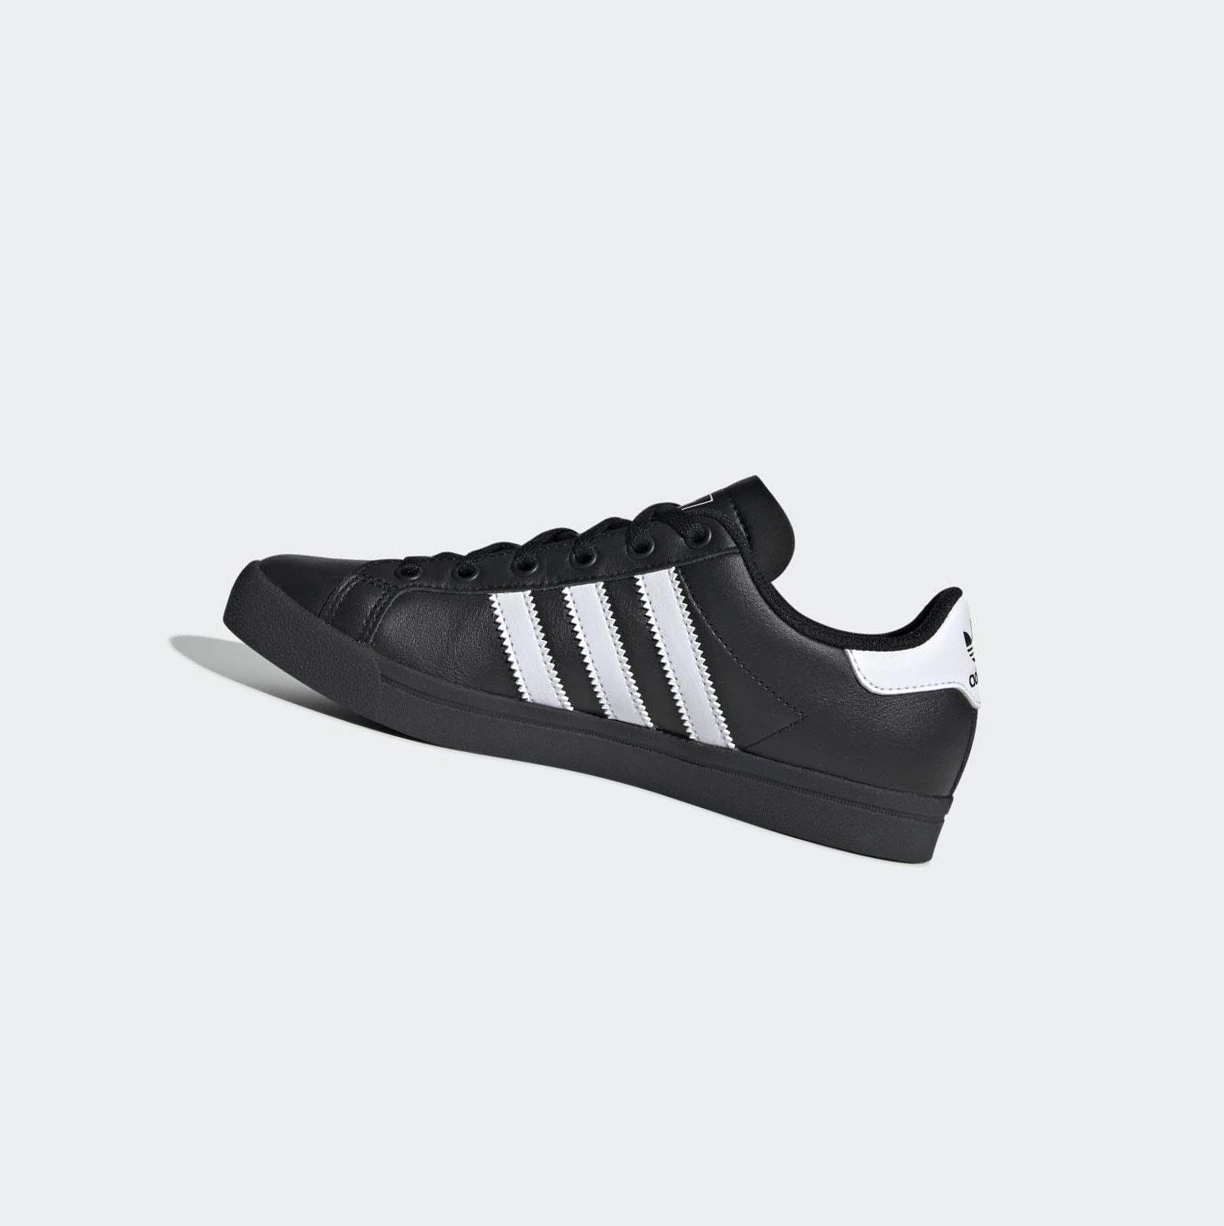 Originálne Topánky Adidas Coast Star Detske Čierne | 154SKLDNOAC